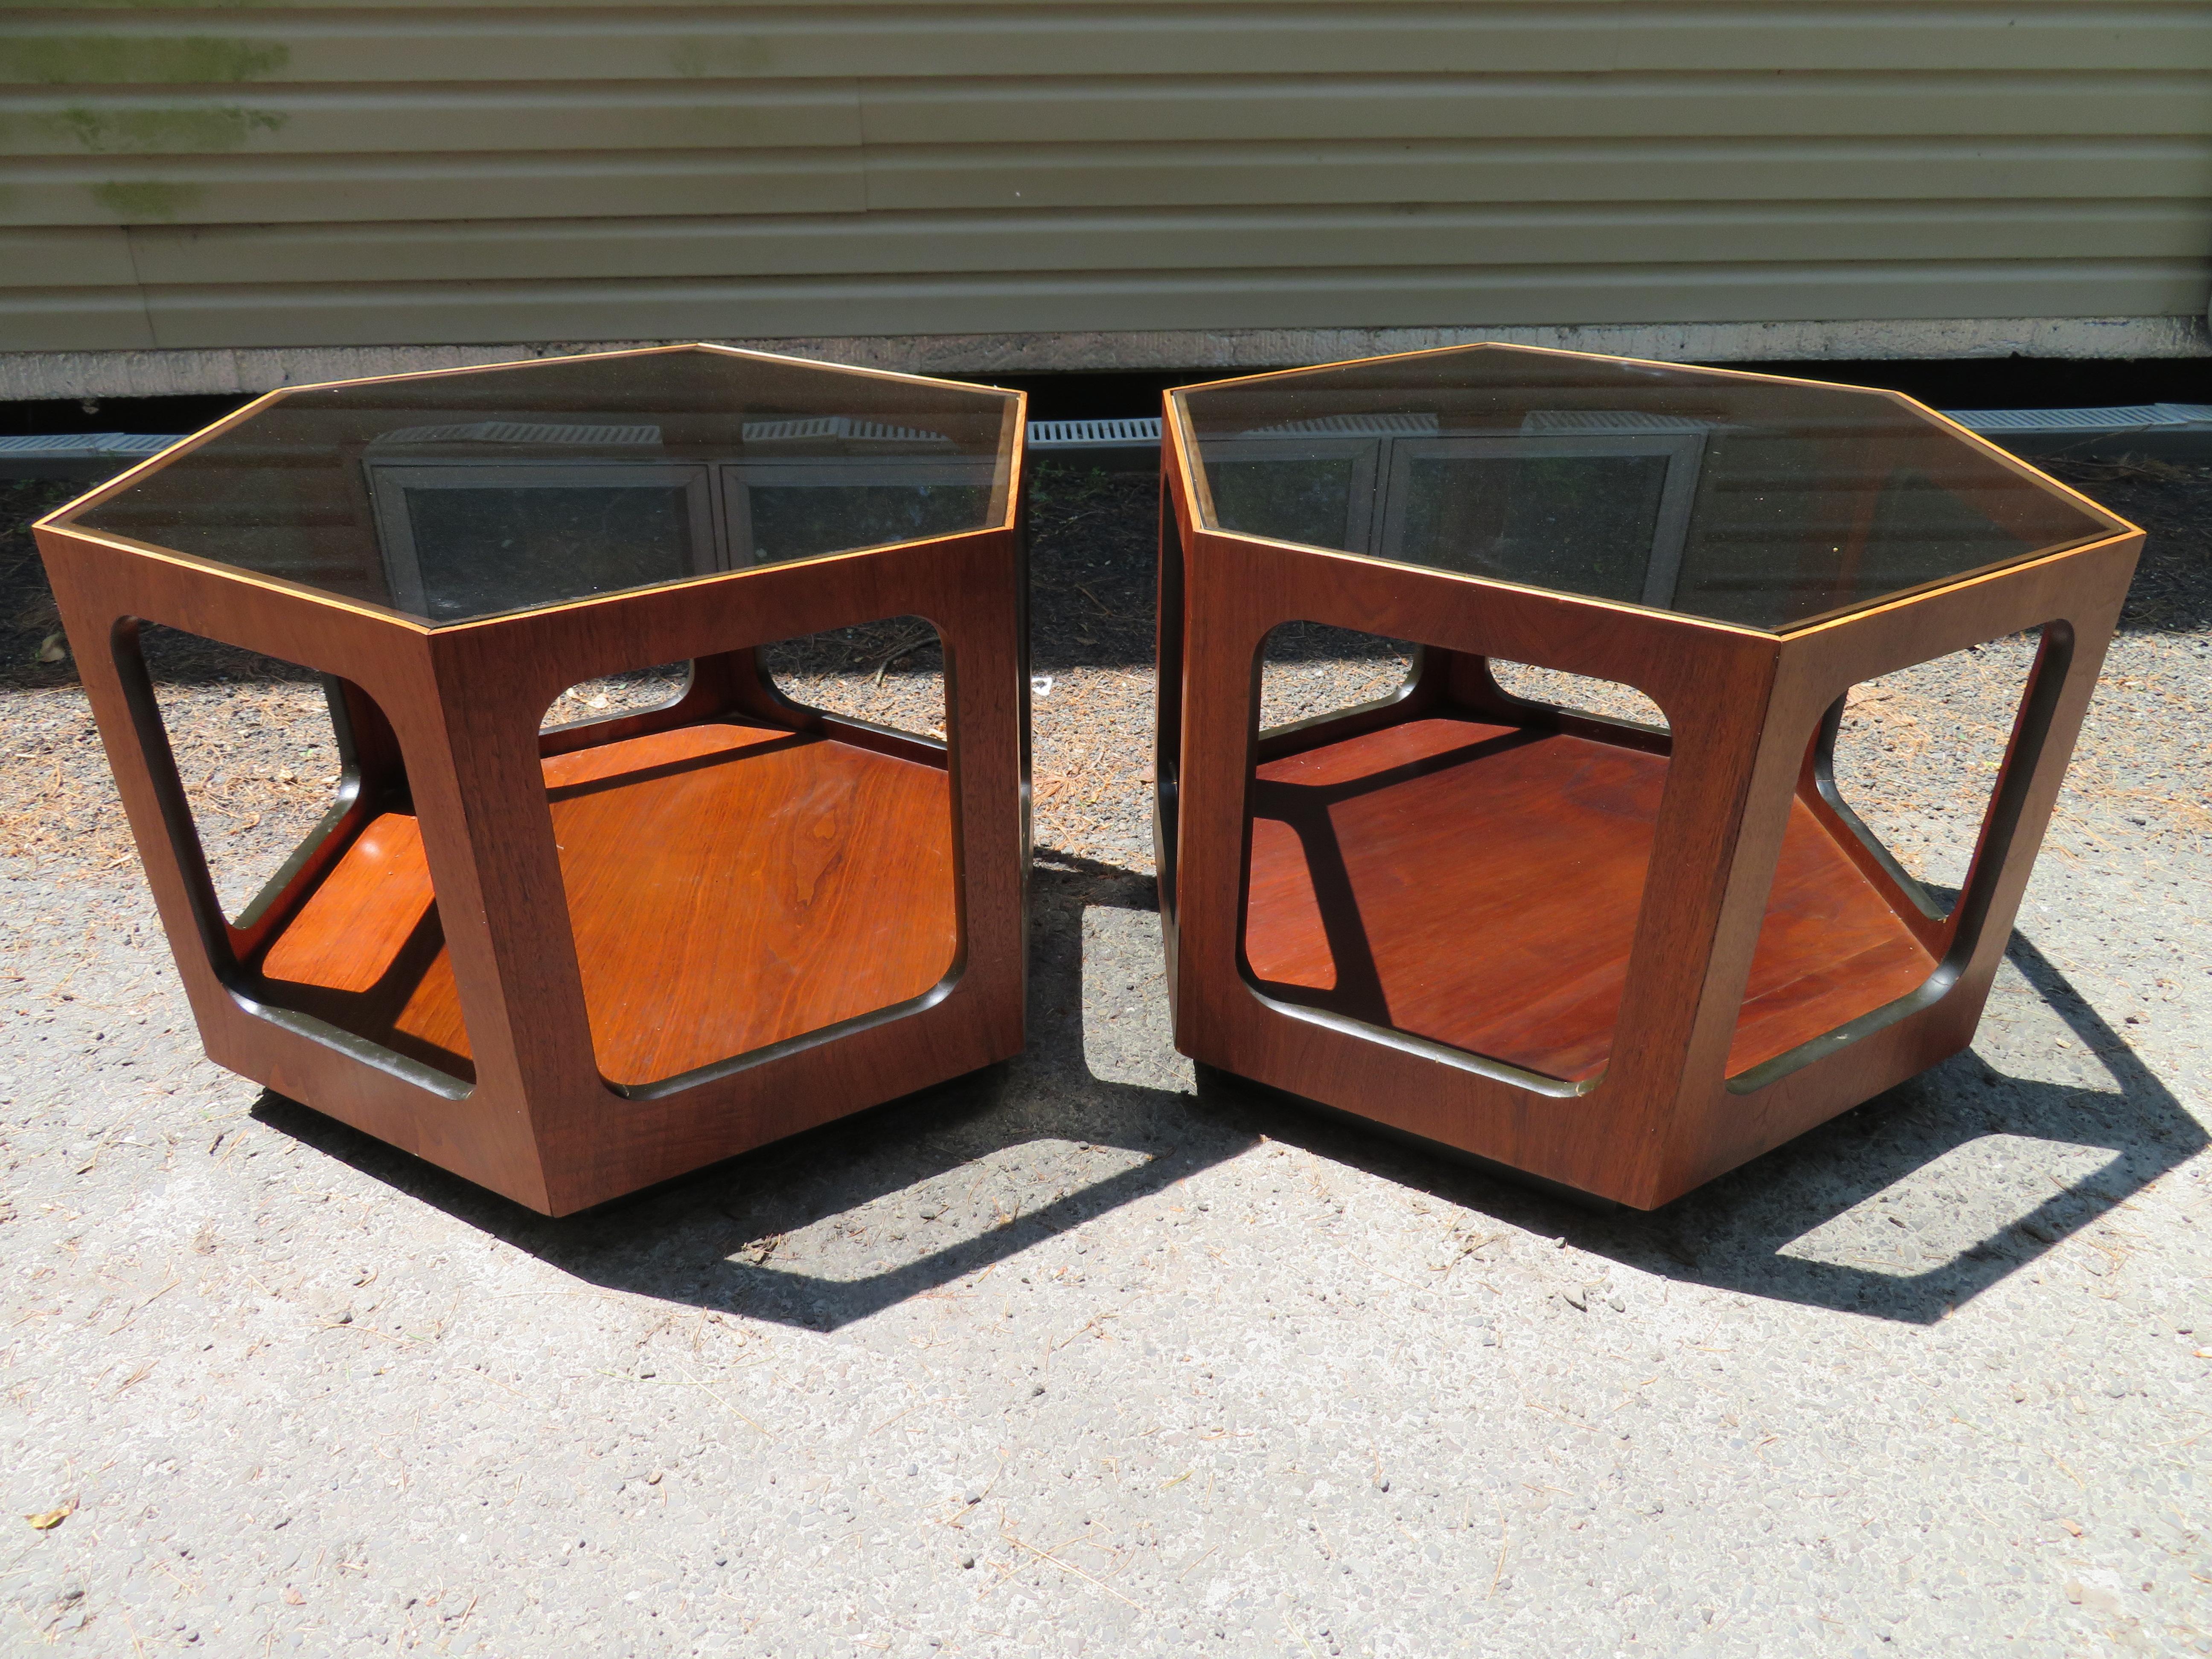 Merveilleuse paire de tables d'appoint Lane de forme octogonale en verre et noyer. Cette paire est en très bon état vintage et est de la taille parfaite - ni trop grande ni trop petite - juste ce qu'il faut ! Ils mesurent 20 